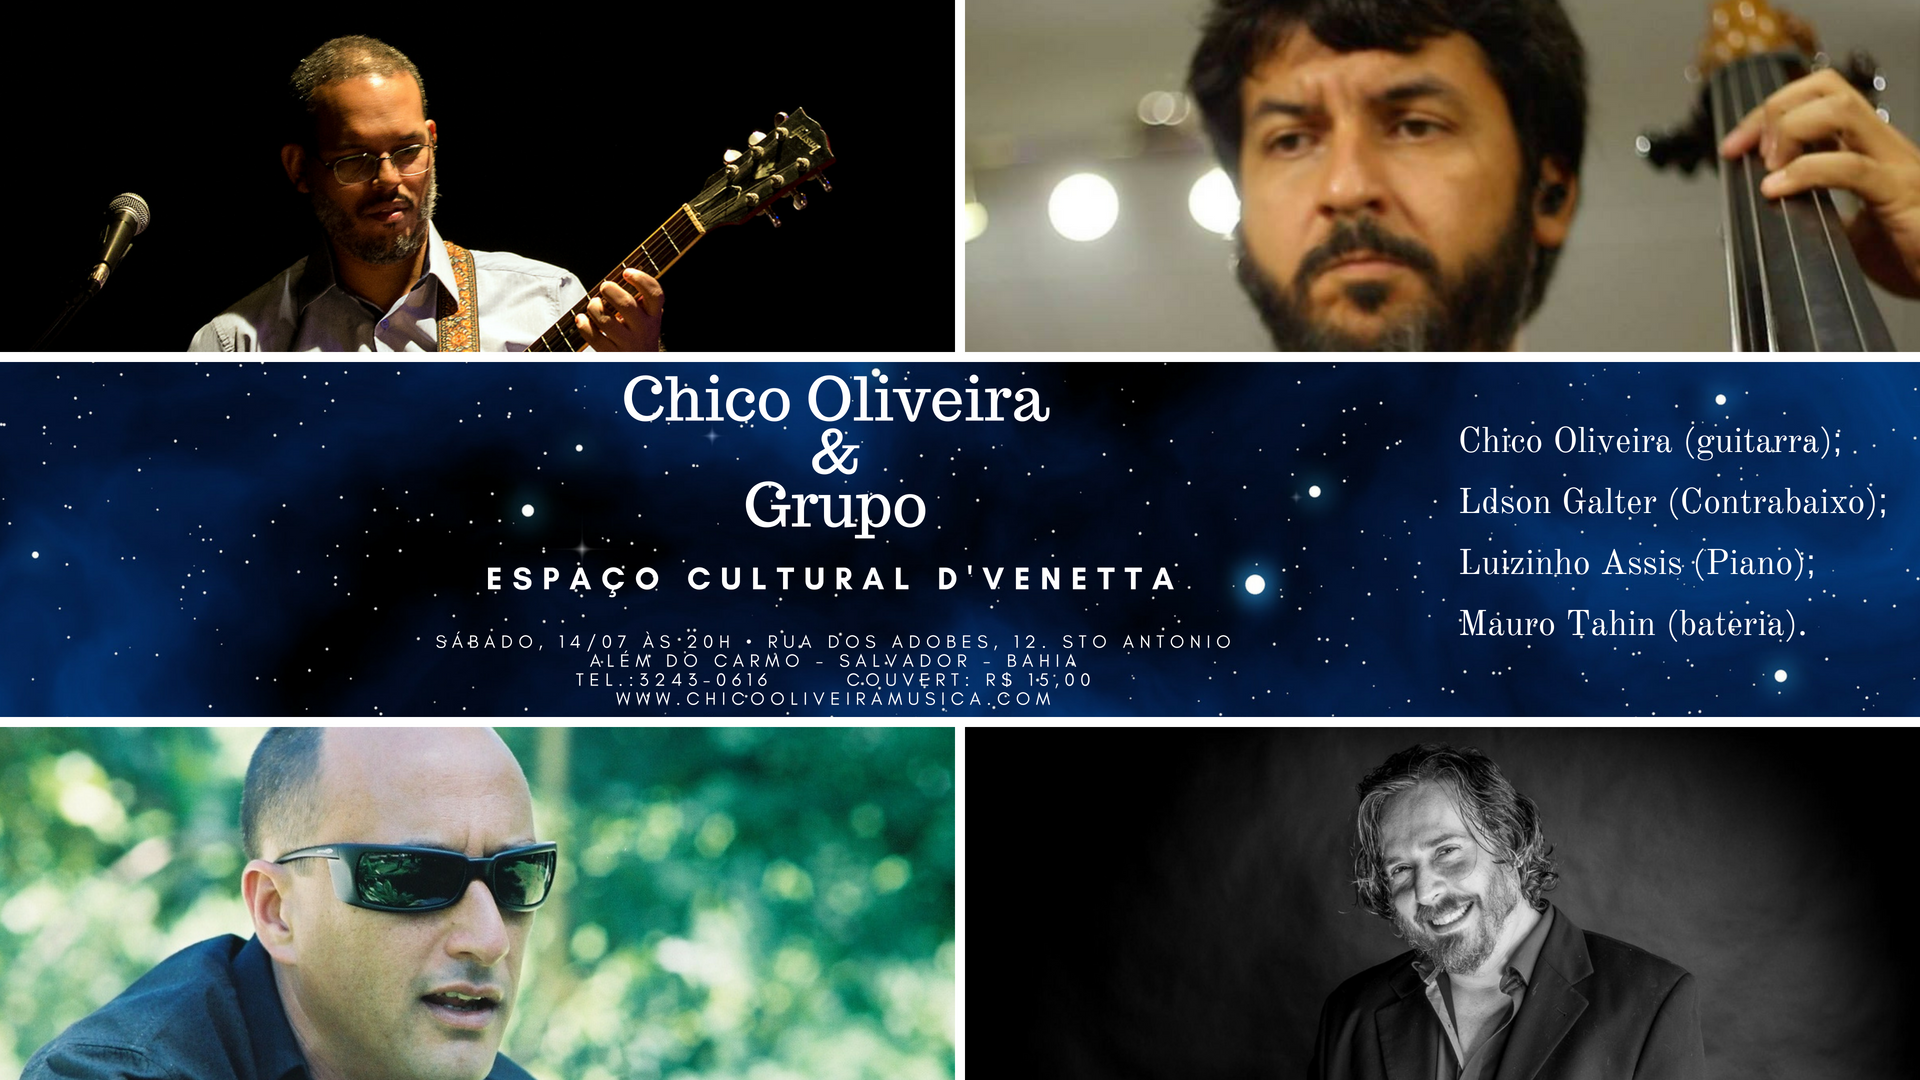 Chico Oliveira Grupo Espaço Cultural D'Venetta Sábado Ldson Galter - Luizinho Assis - Mauro Tahin.